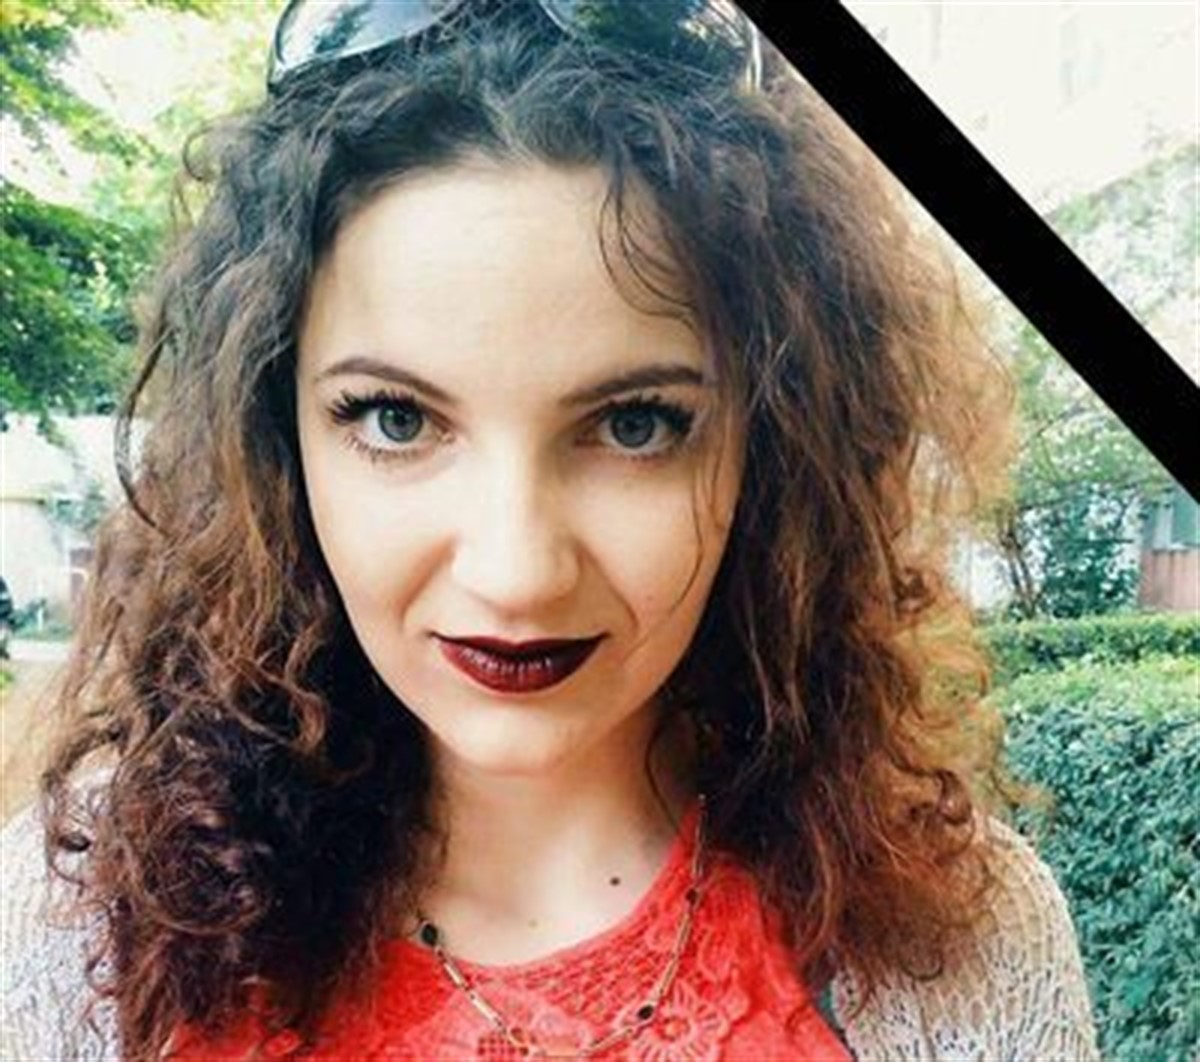 Iuliana este o tânără din județul Vaslui care a murit la doar 19 ani. Fata a fost adusă în comă la un spital din București, dar medicii nu au putut să o salveze.